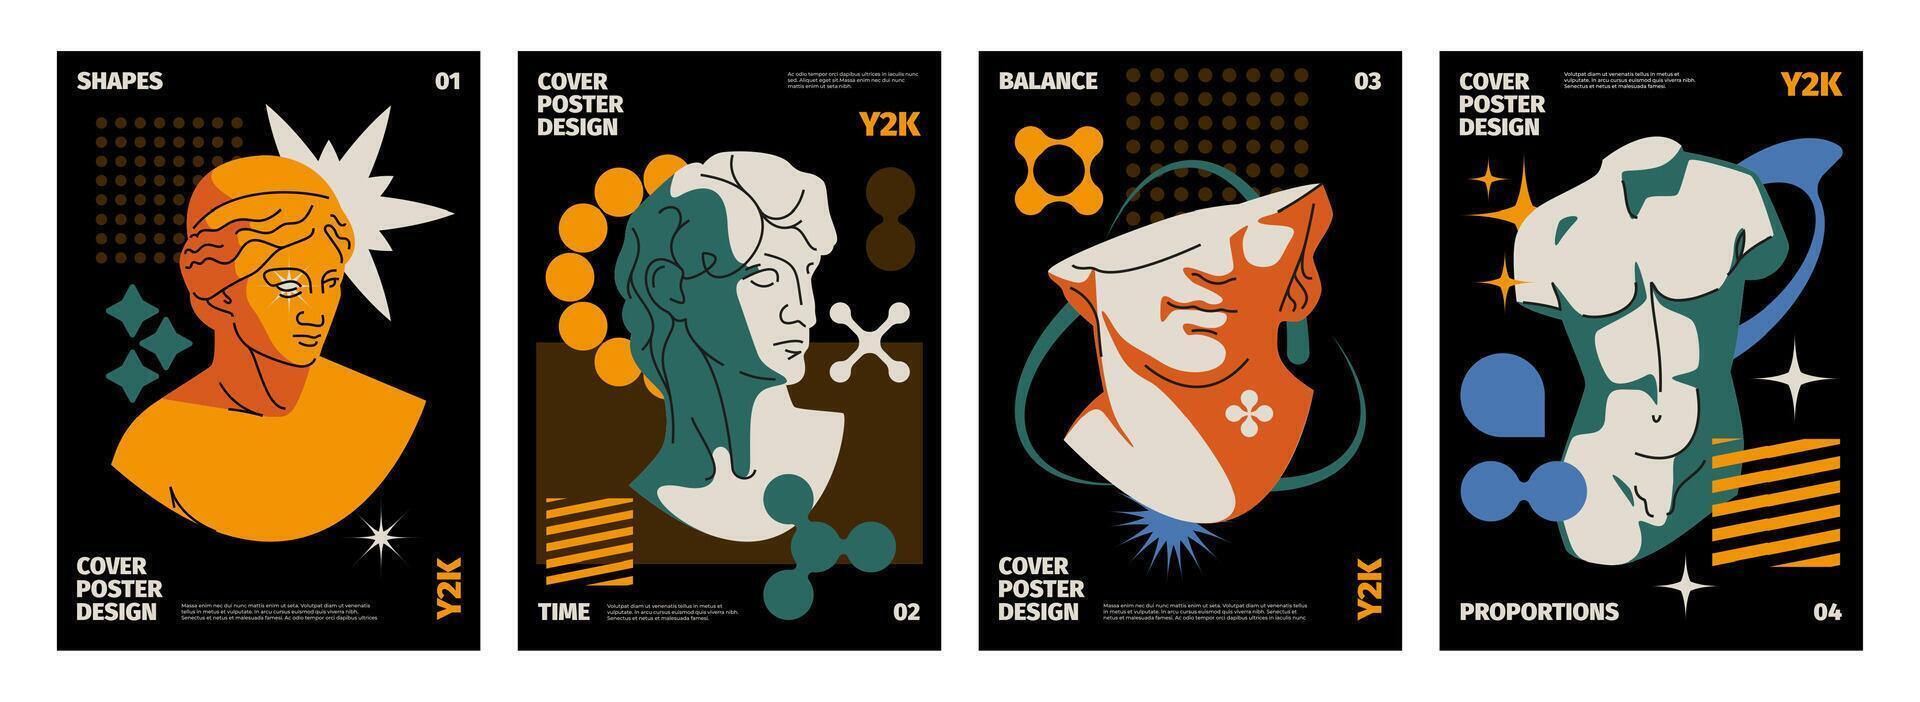 y2k omslag. abstract modern typografie banners met meetkundig vormen en kosmisch elementen. vector 90s retro afdrukken ontwerp lay-out